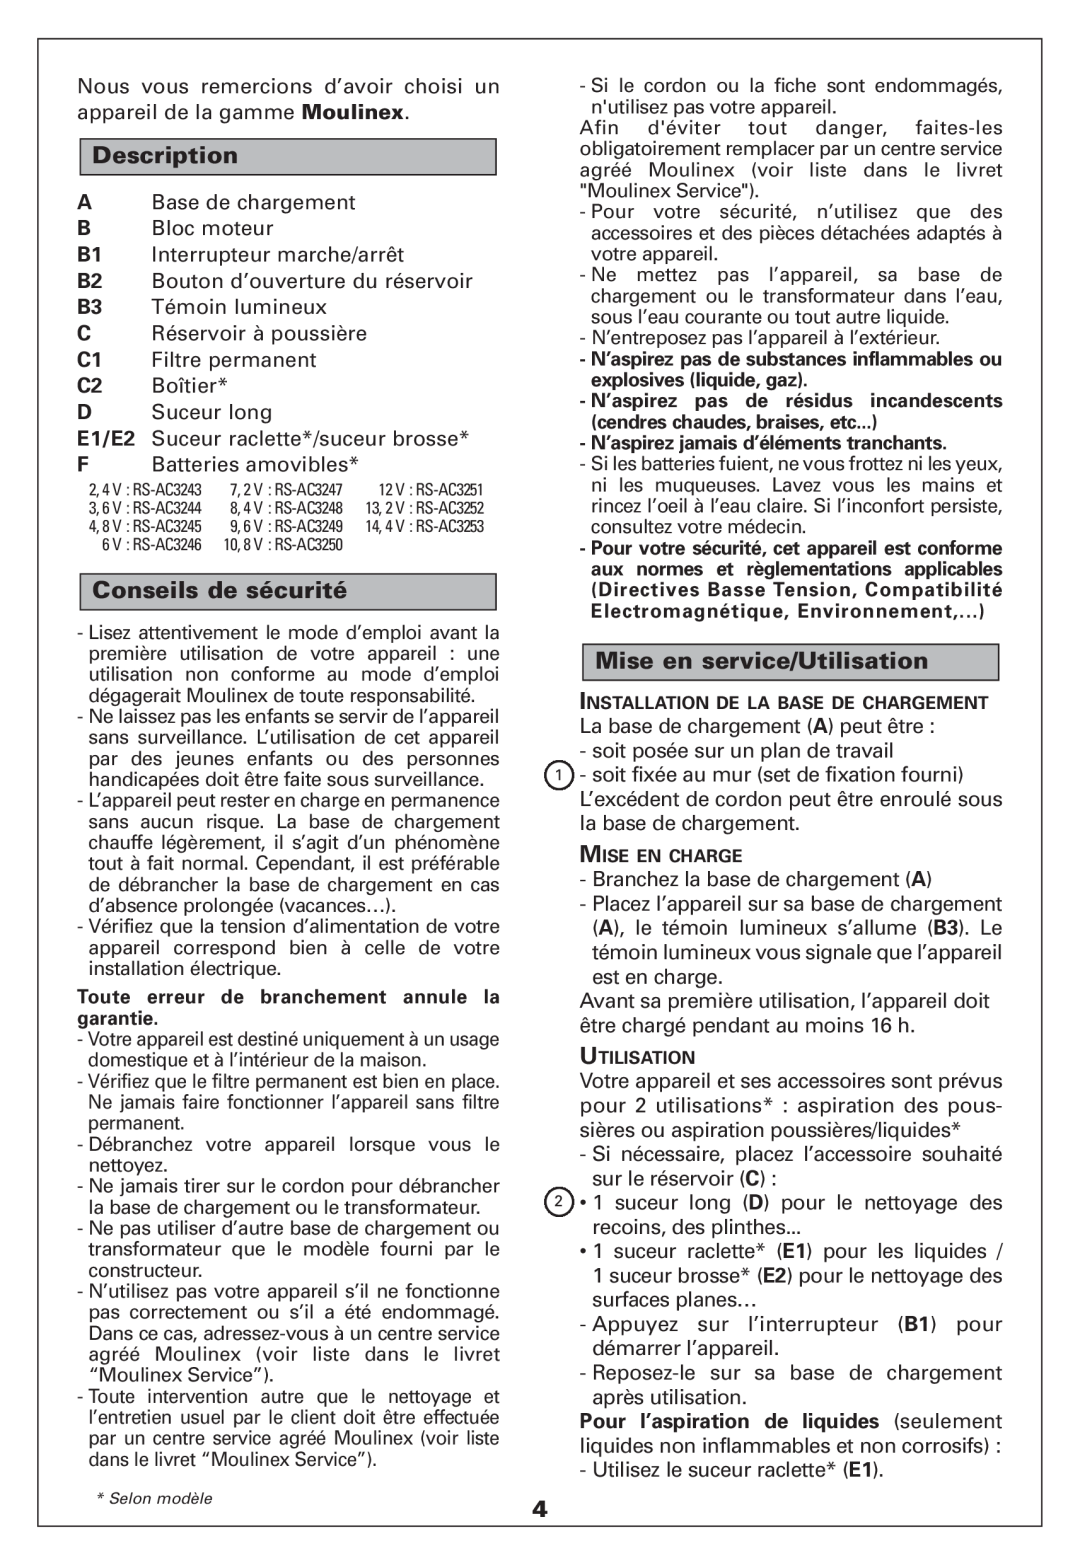 Moulinex HAND-HELD VACCUUM CLEANER manual Description, Conseils de sécurité, Mise en service/Utilisation 